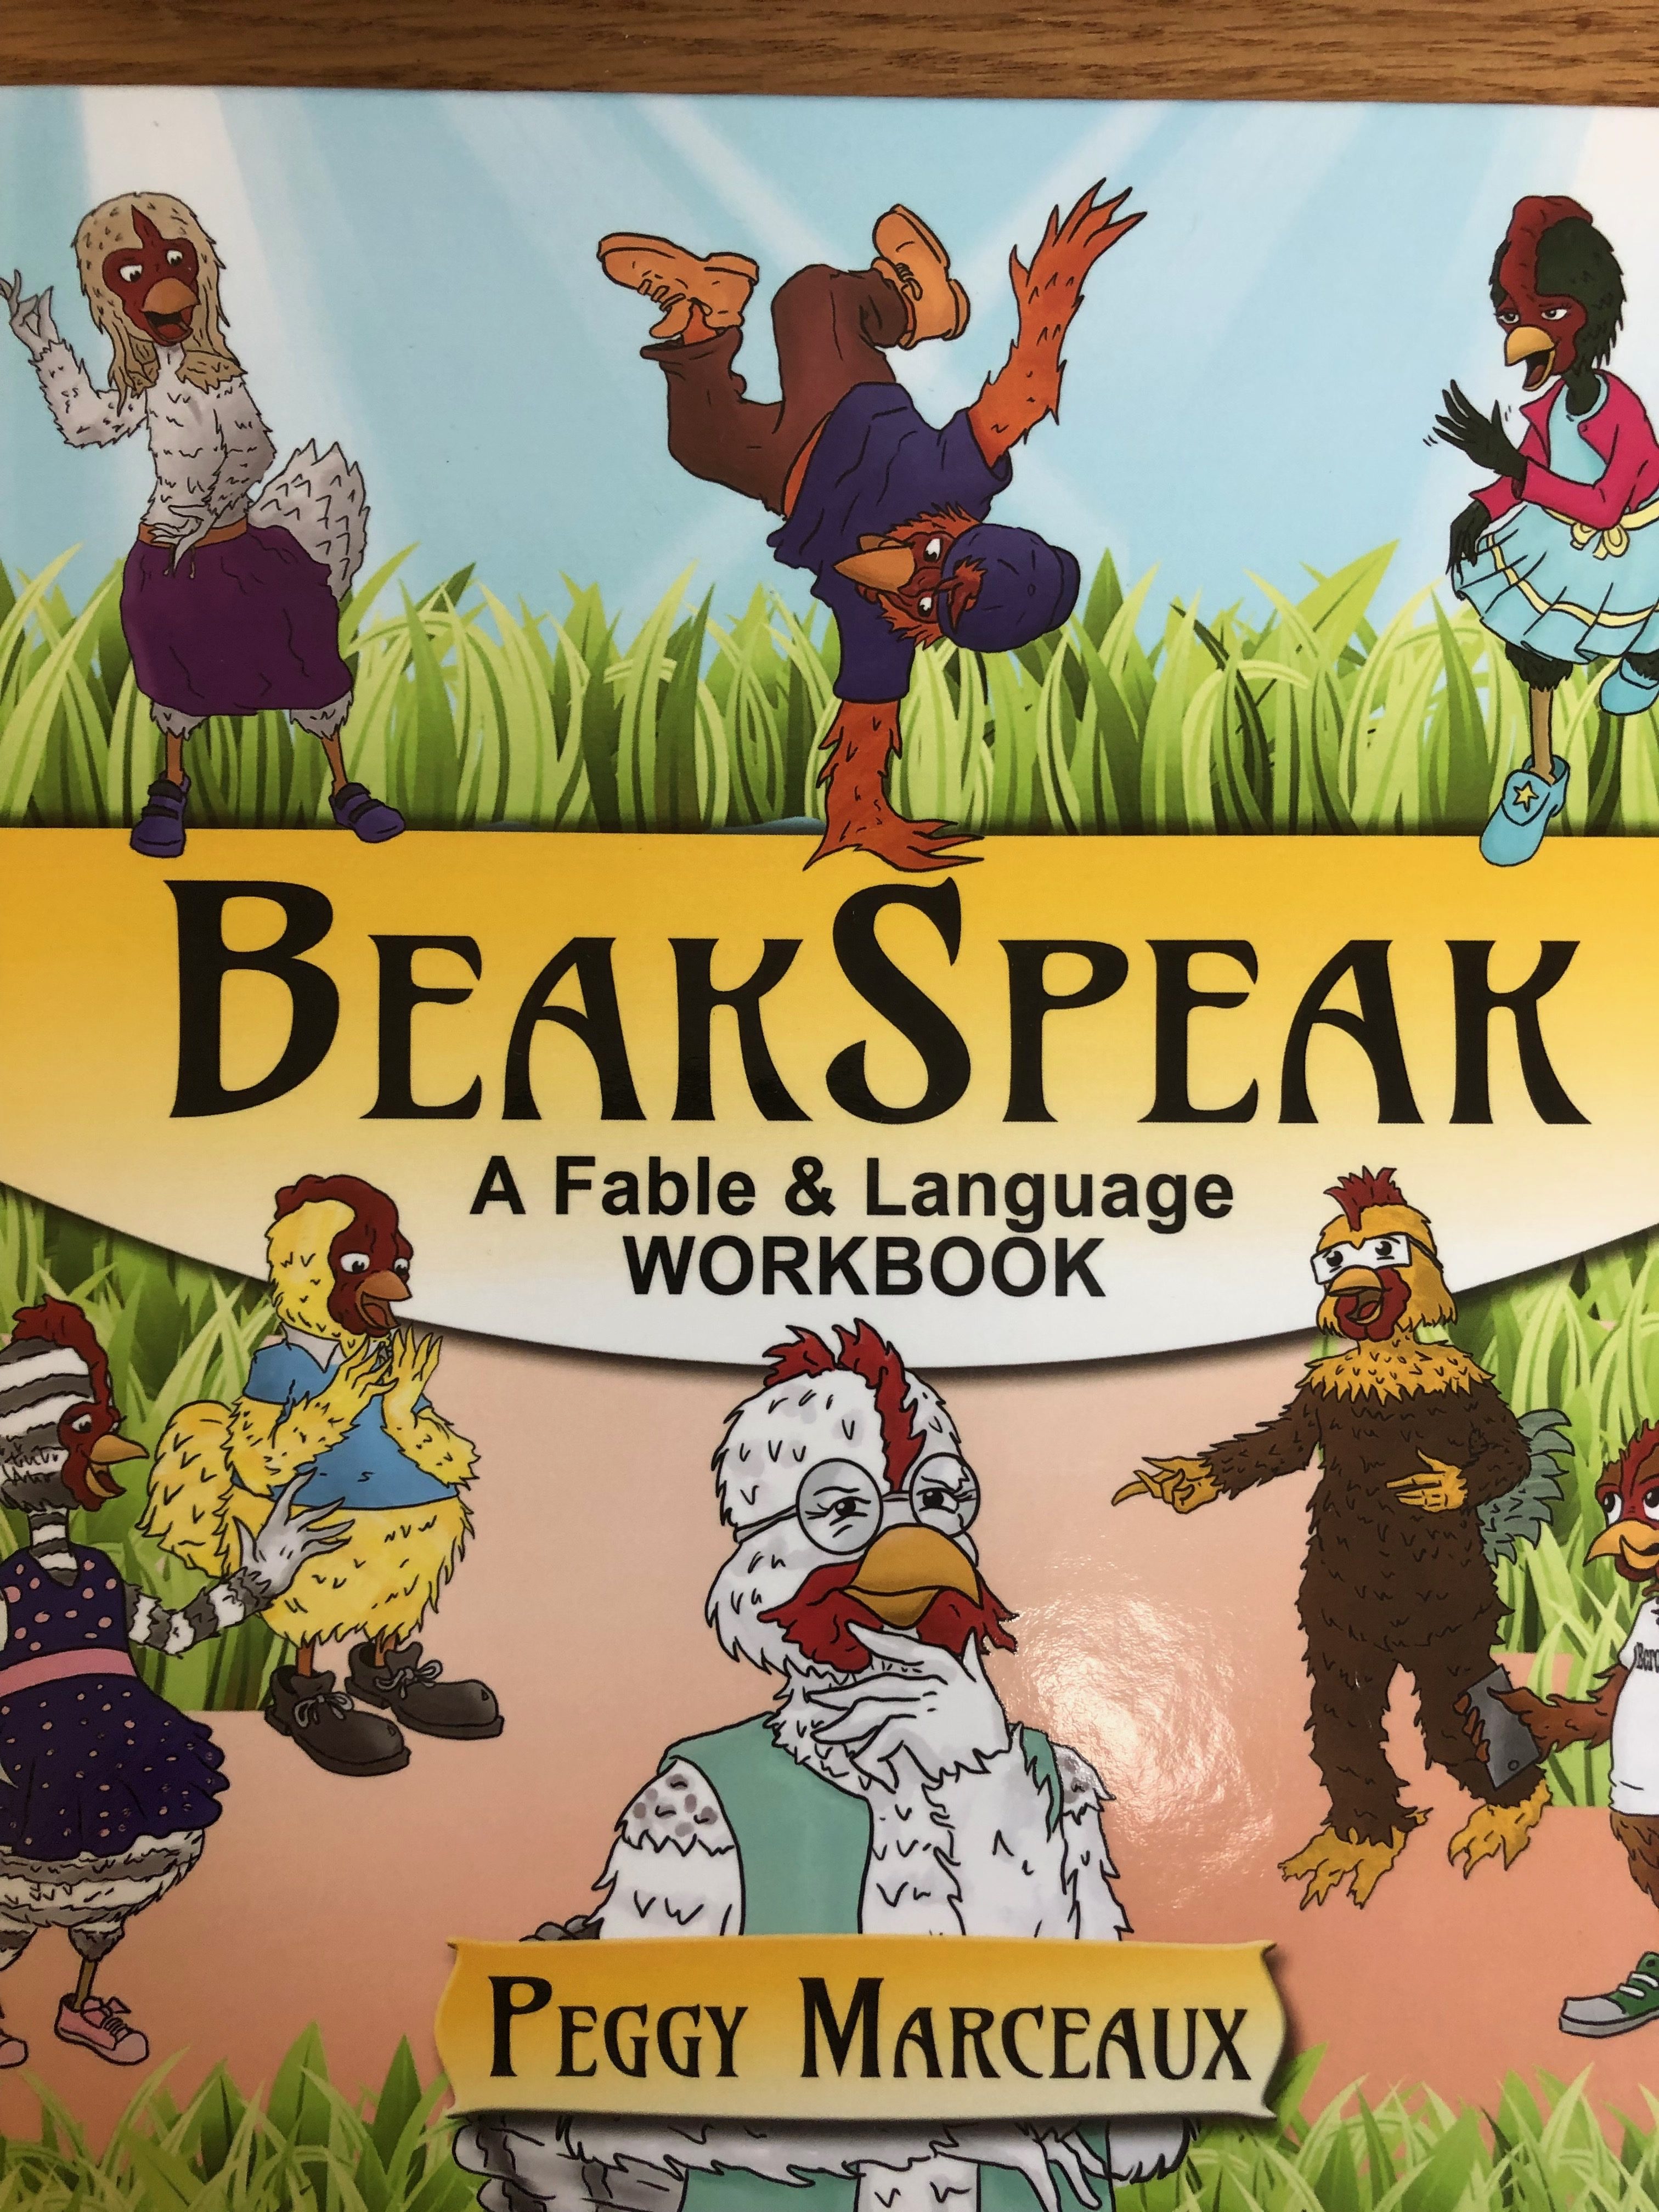 BeakSpeak - A Fable & Language Workbook